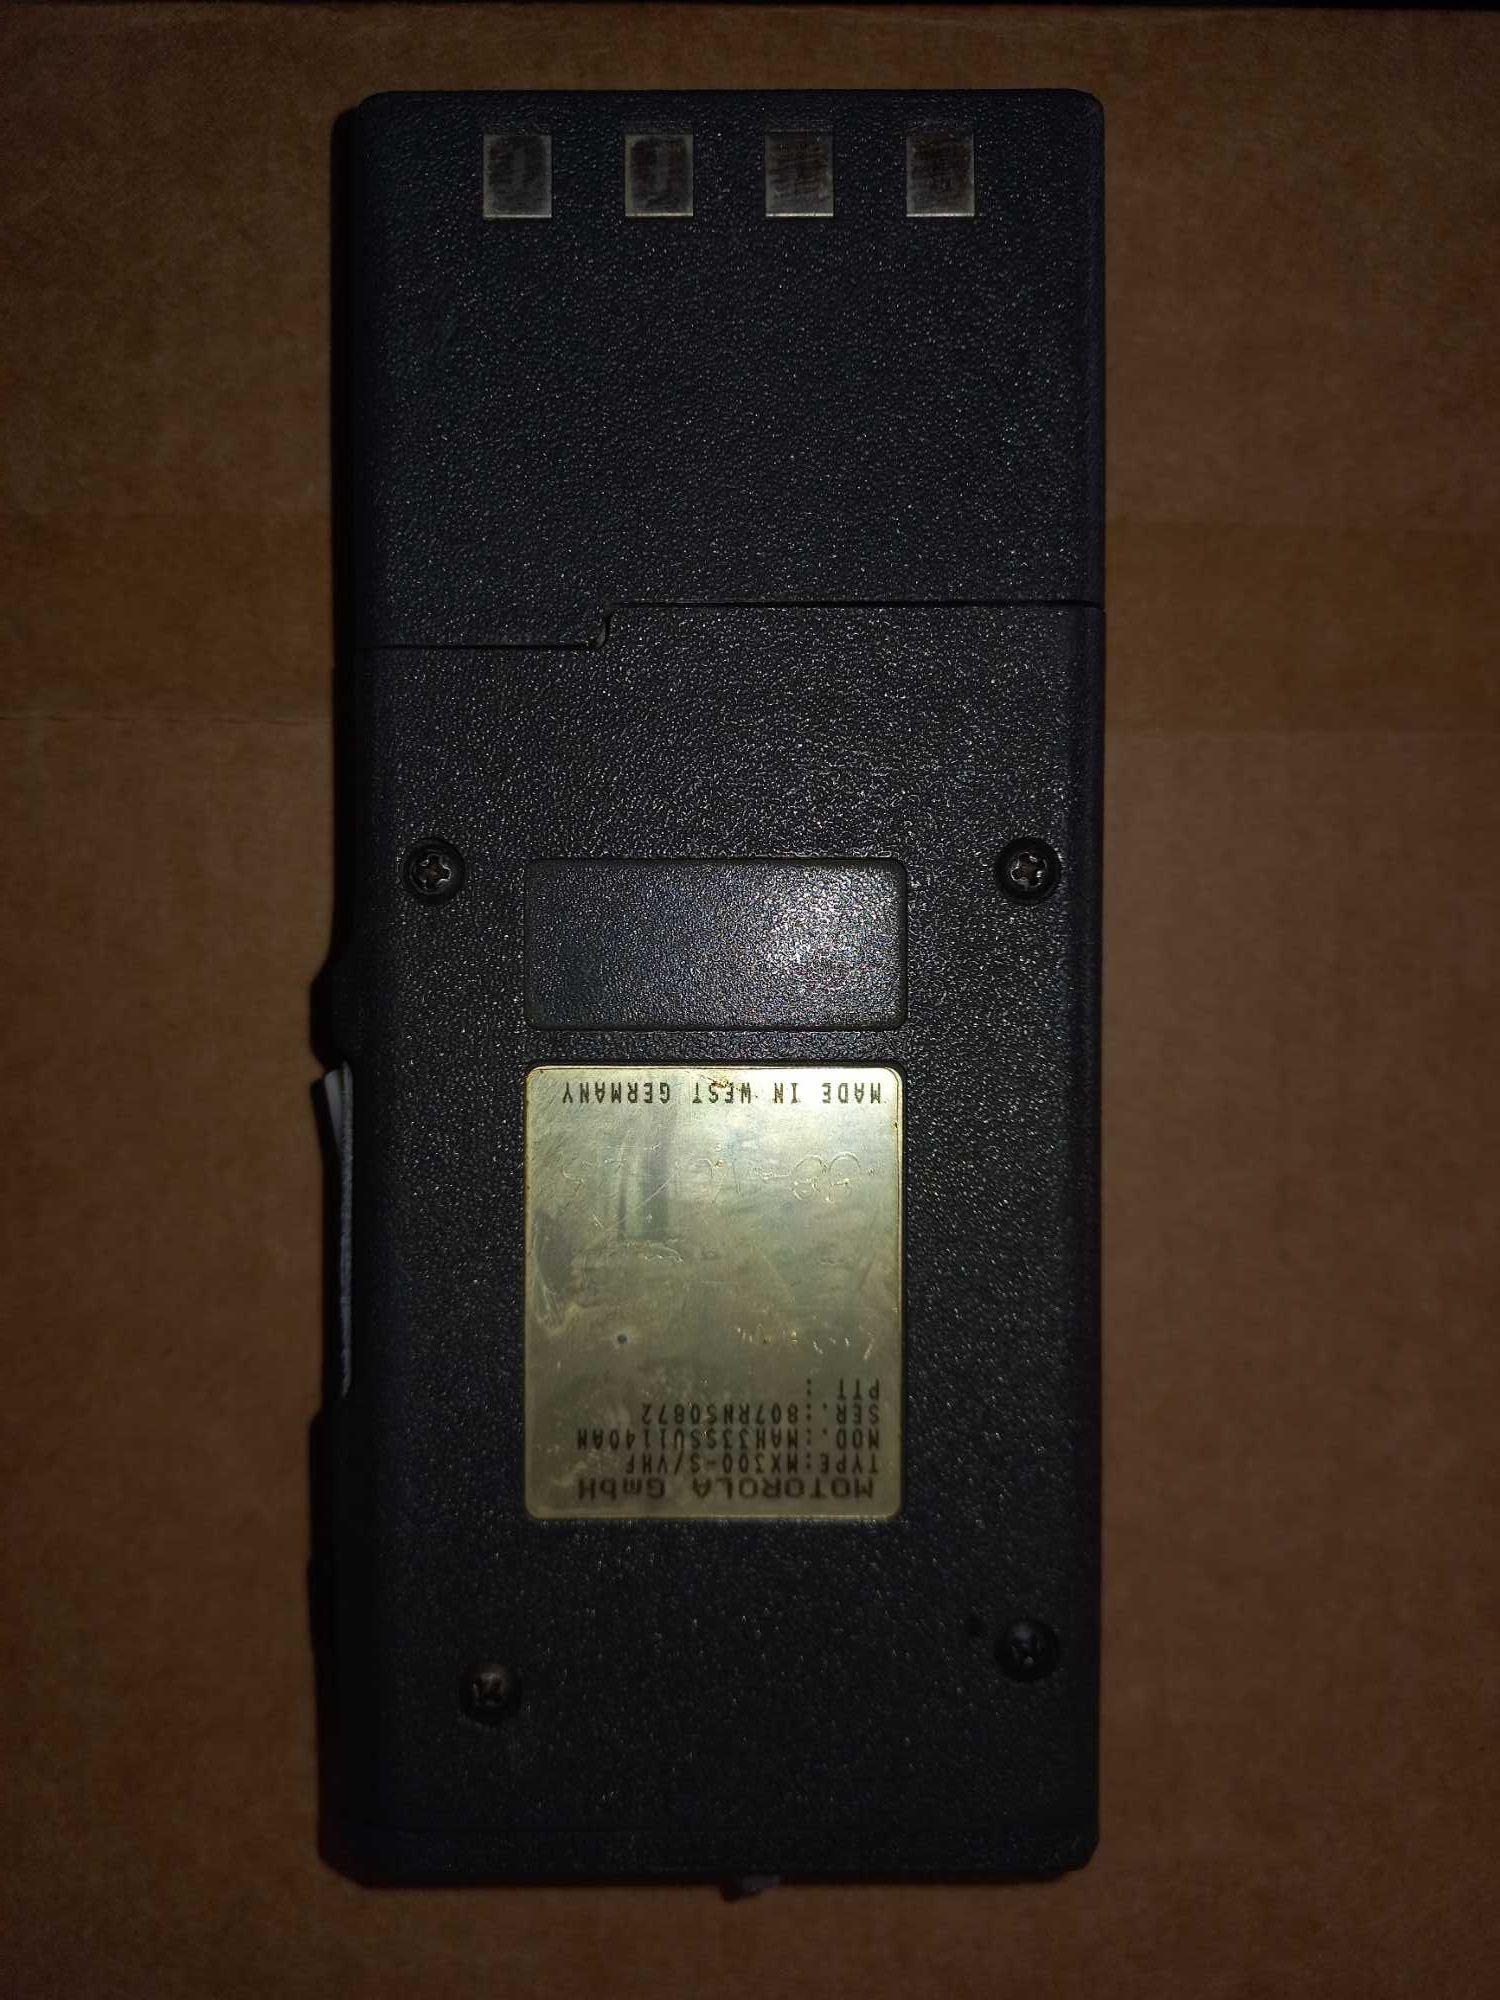 Radio Motorola MX330